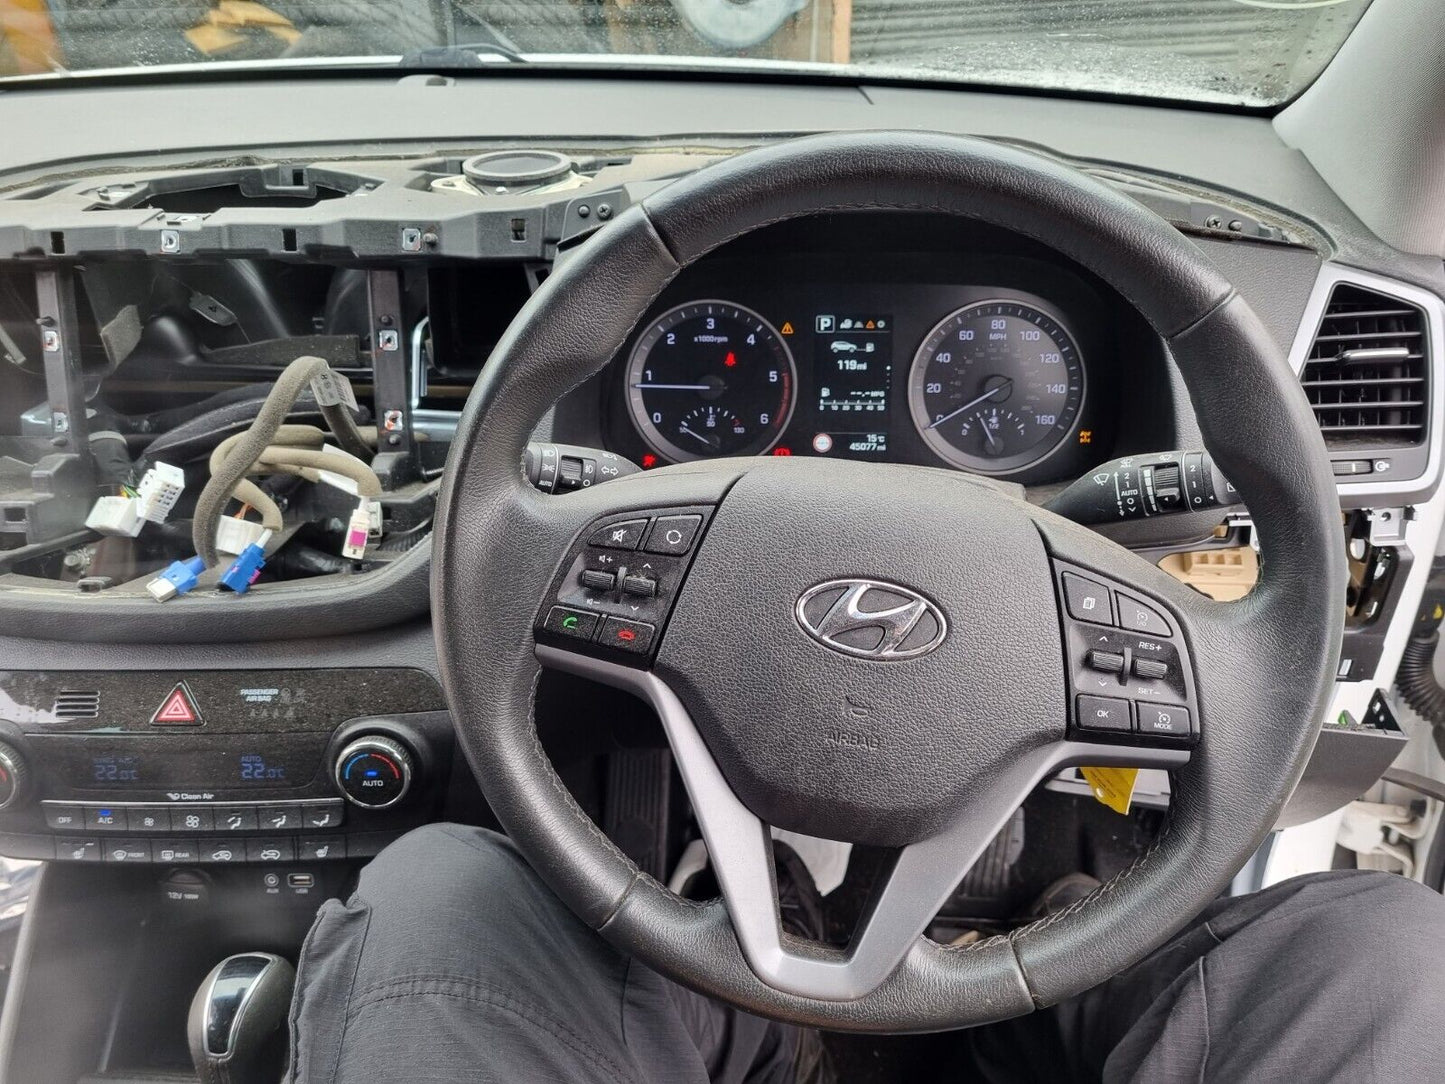 2015 HYUNDAI TUCSON (TL) PREMIUM 2.0 CRDI DIESEL 4X4 AUTO VEHICLE FOR BREAKING